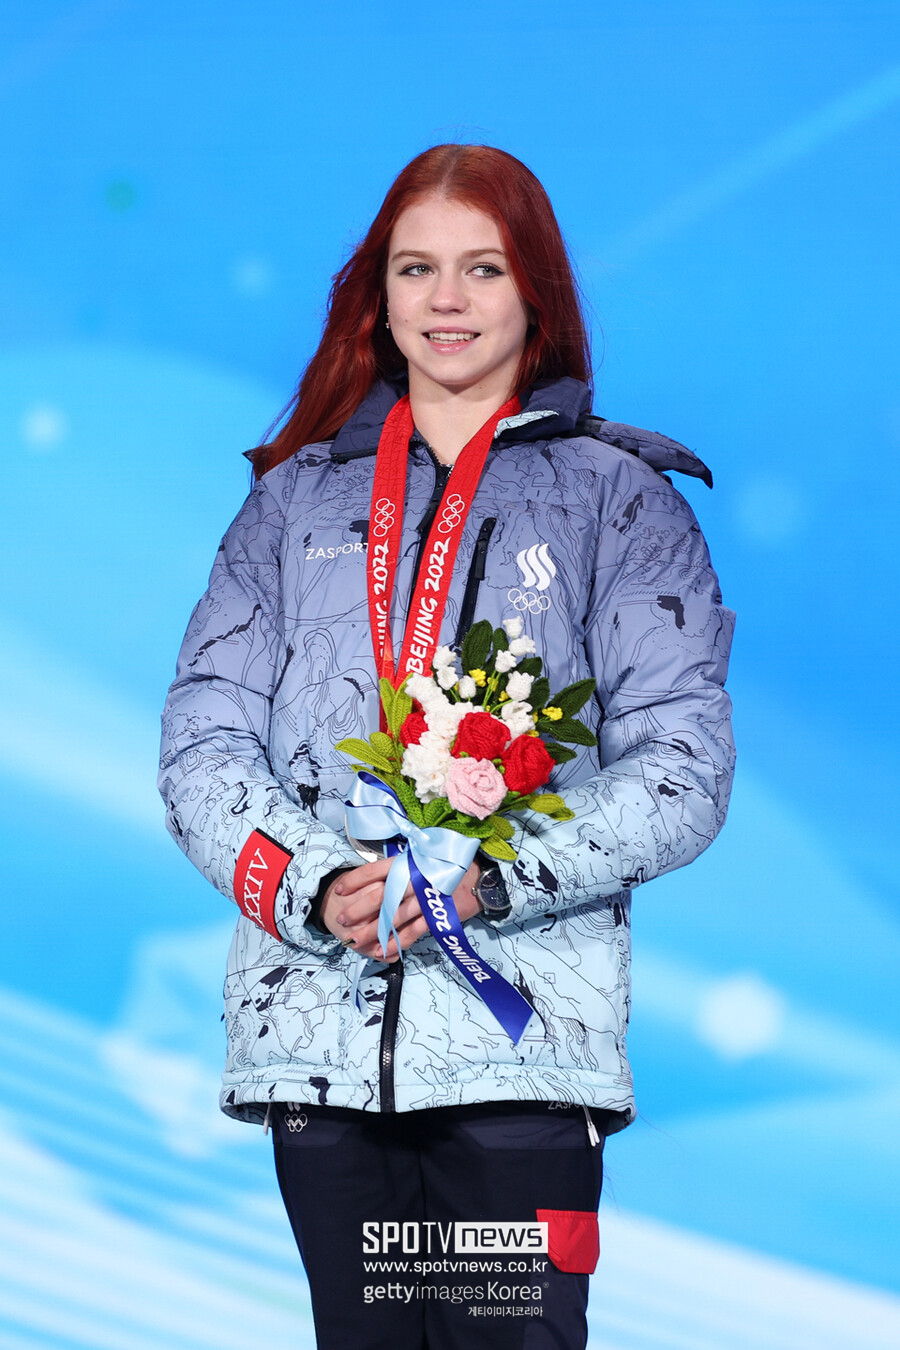 ▲ 2022베이징동계올림픽 피겨 스케이팅 여자 싱글 메달 수여식에 참석한 알렉산드라 트루소바